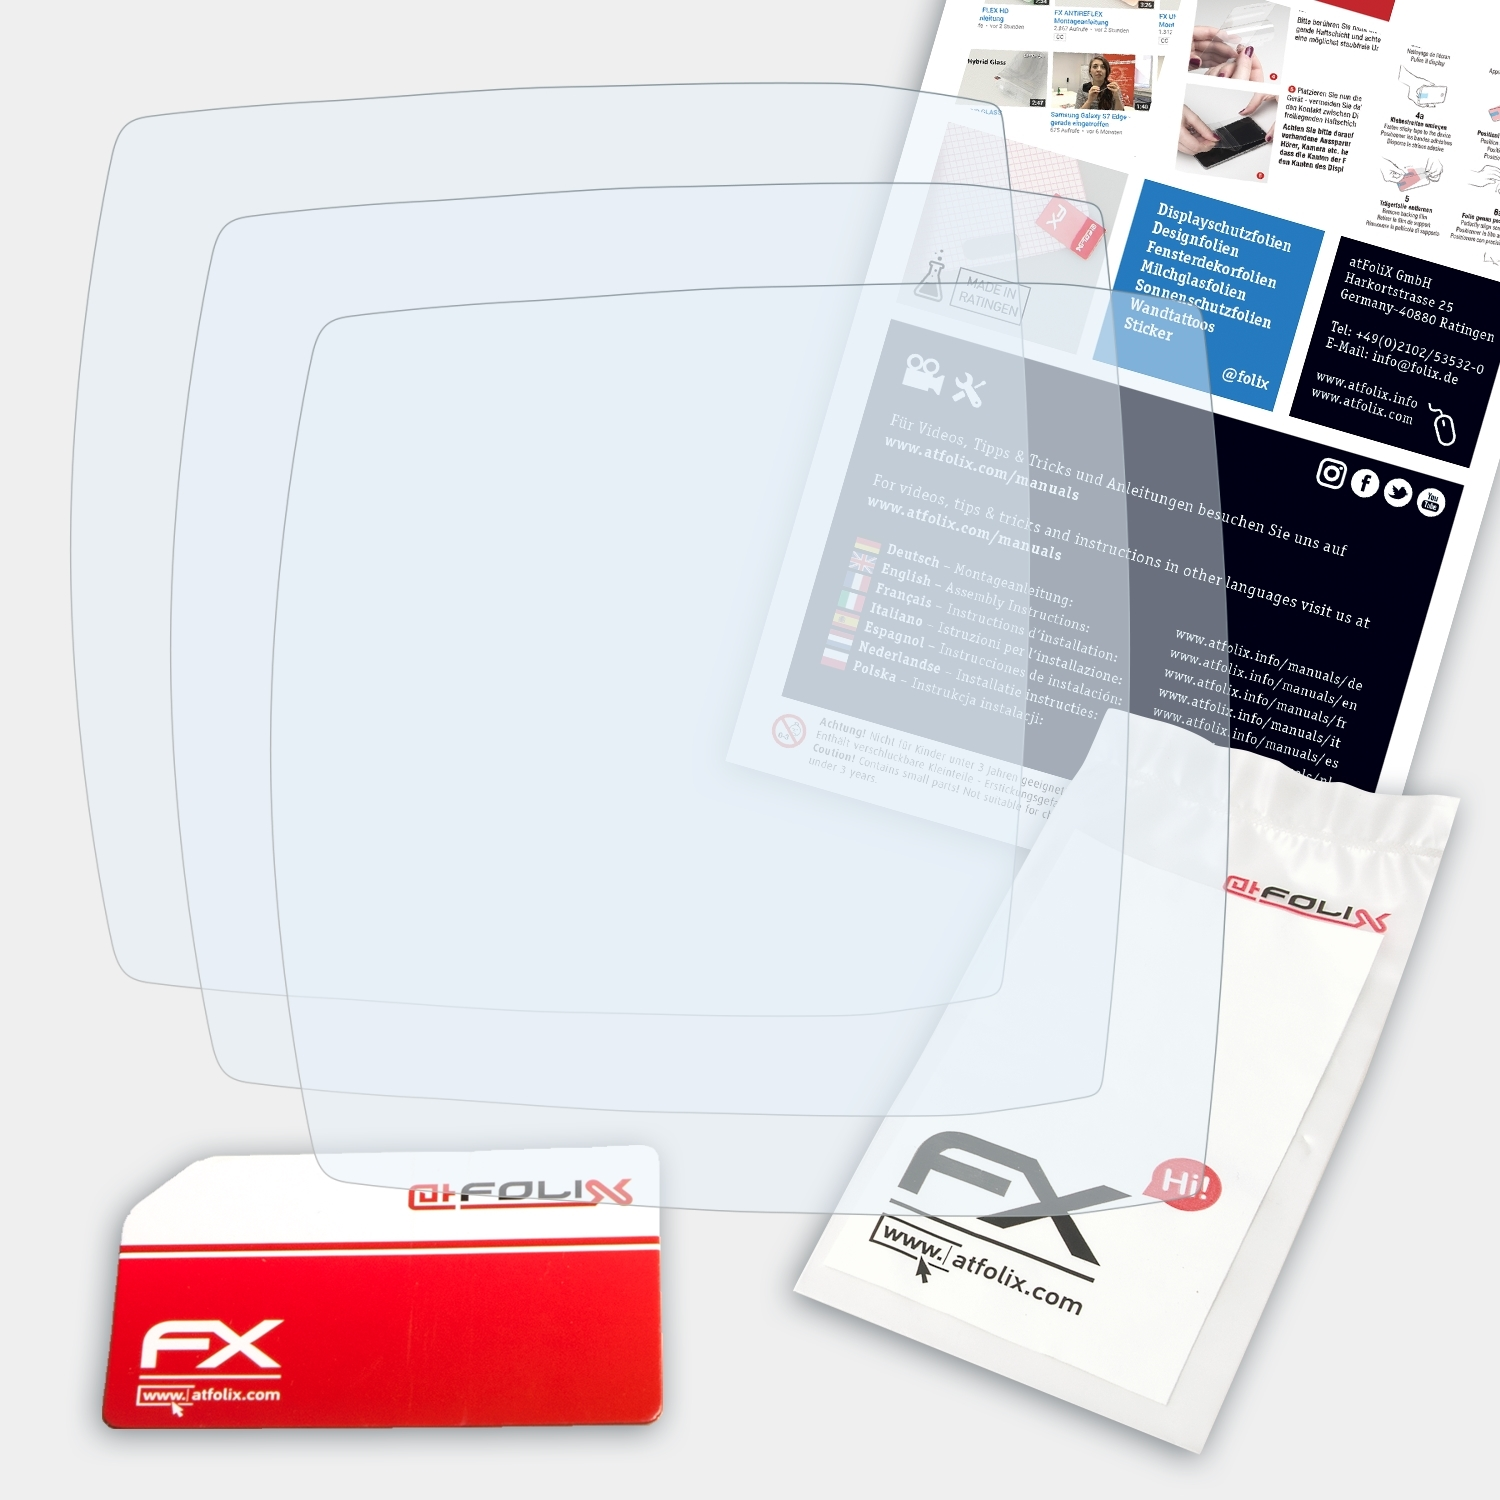 Bosch Purion) ATFOLIX FX-Clear Displayschutz(für 3x